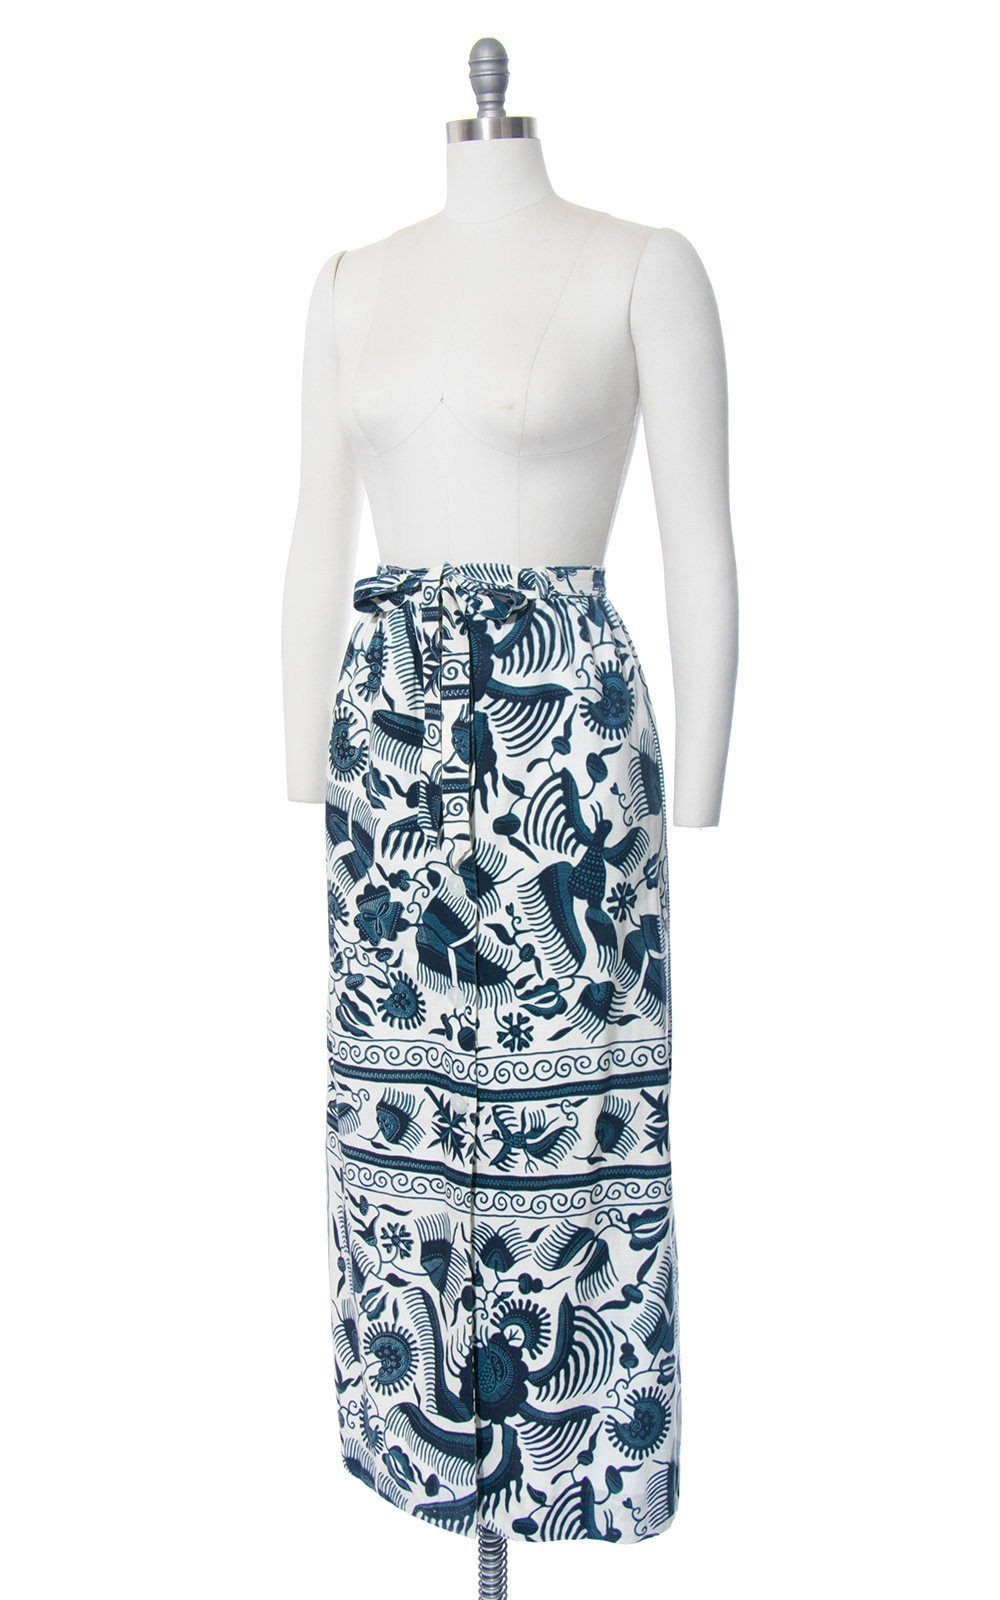 Vintage 1970s Skirt | 70s Floral Bird Batik Print Cotton Button Up Blue Cream Belted High Waisted Boho Maxi Skirt (medium)